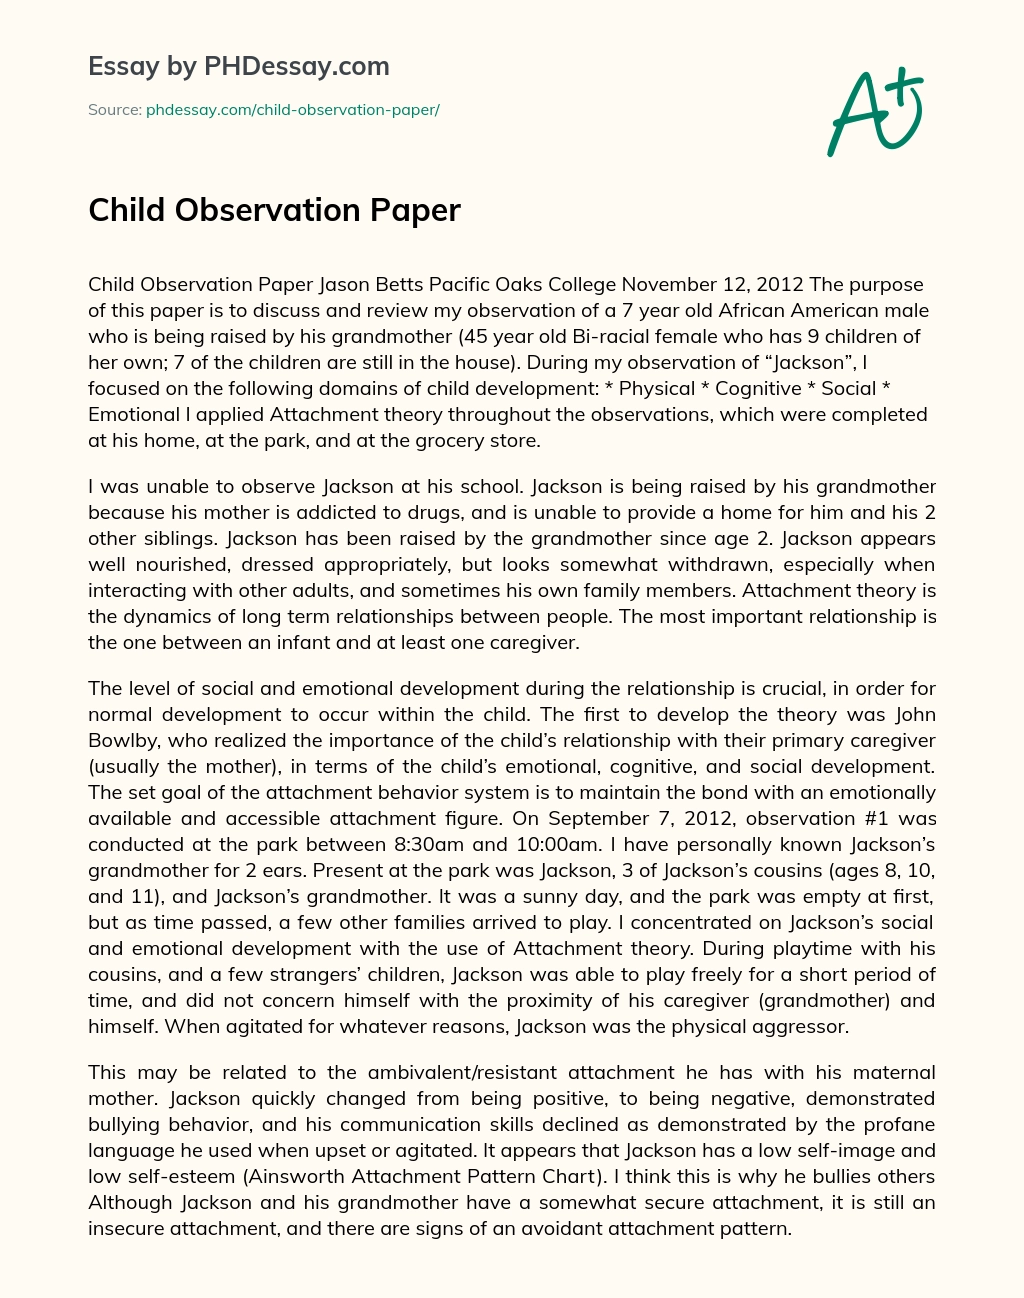 Child Observation Paper essay